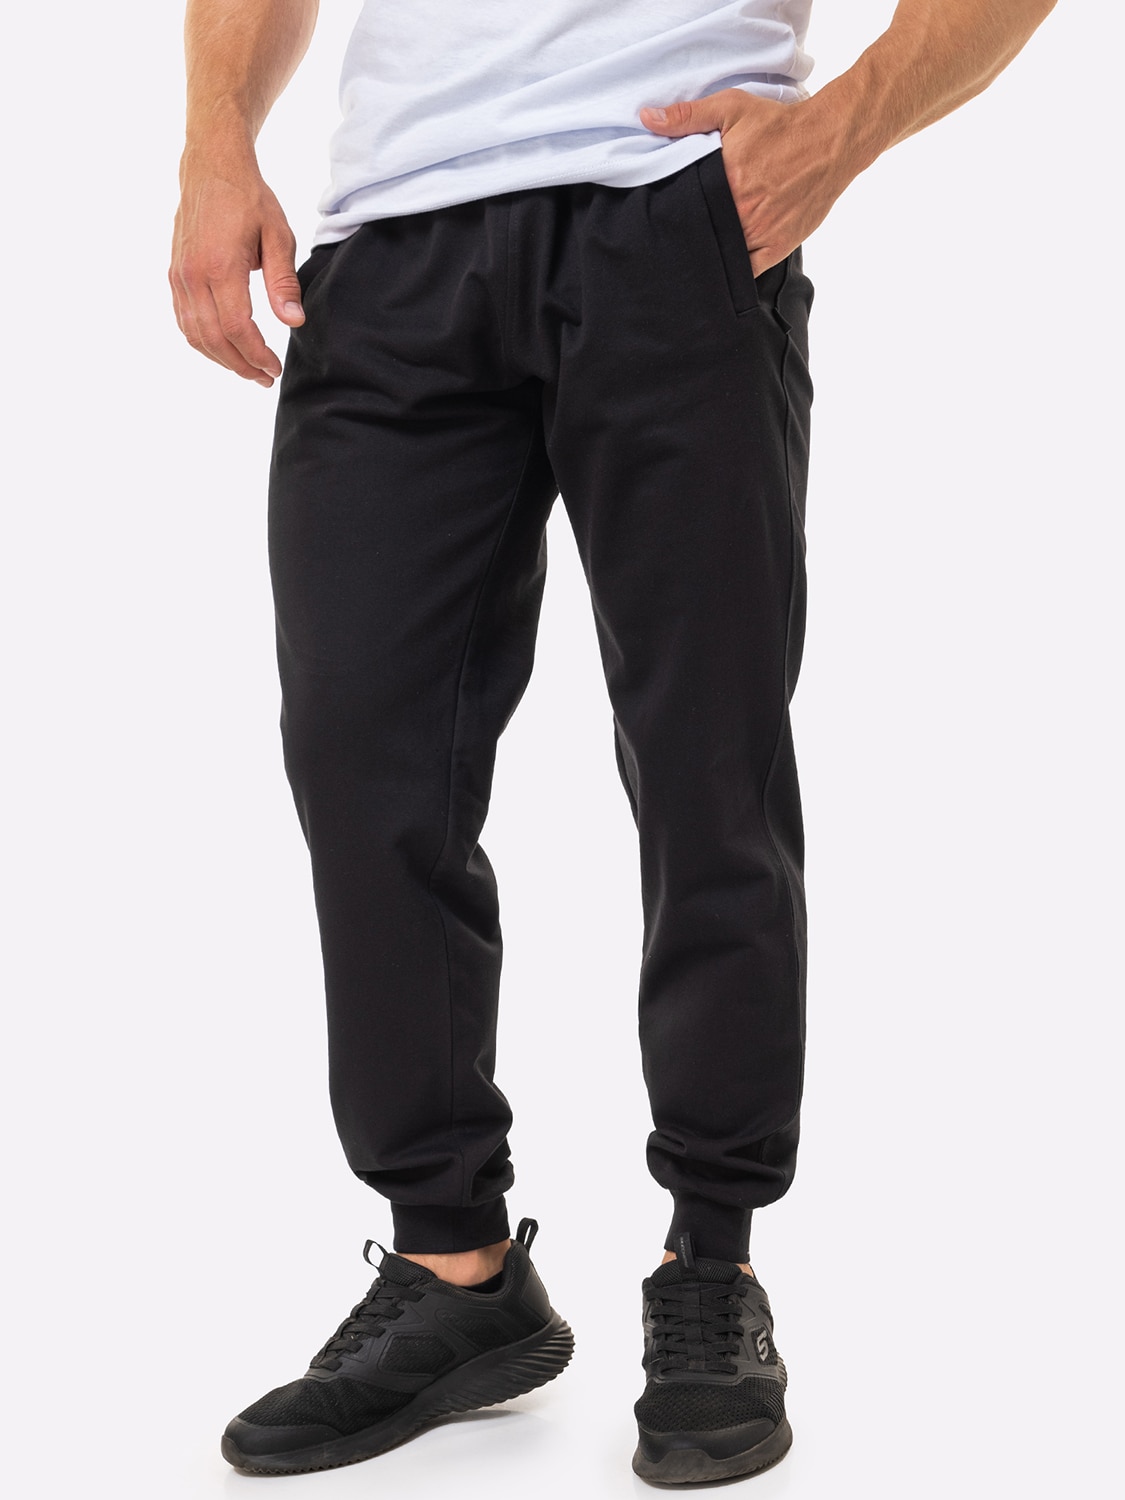 Спортивные брюки мужские HappyFox 9118 черные 50 RU